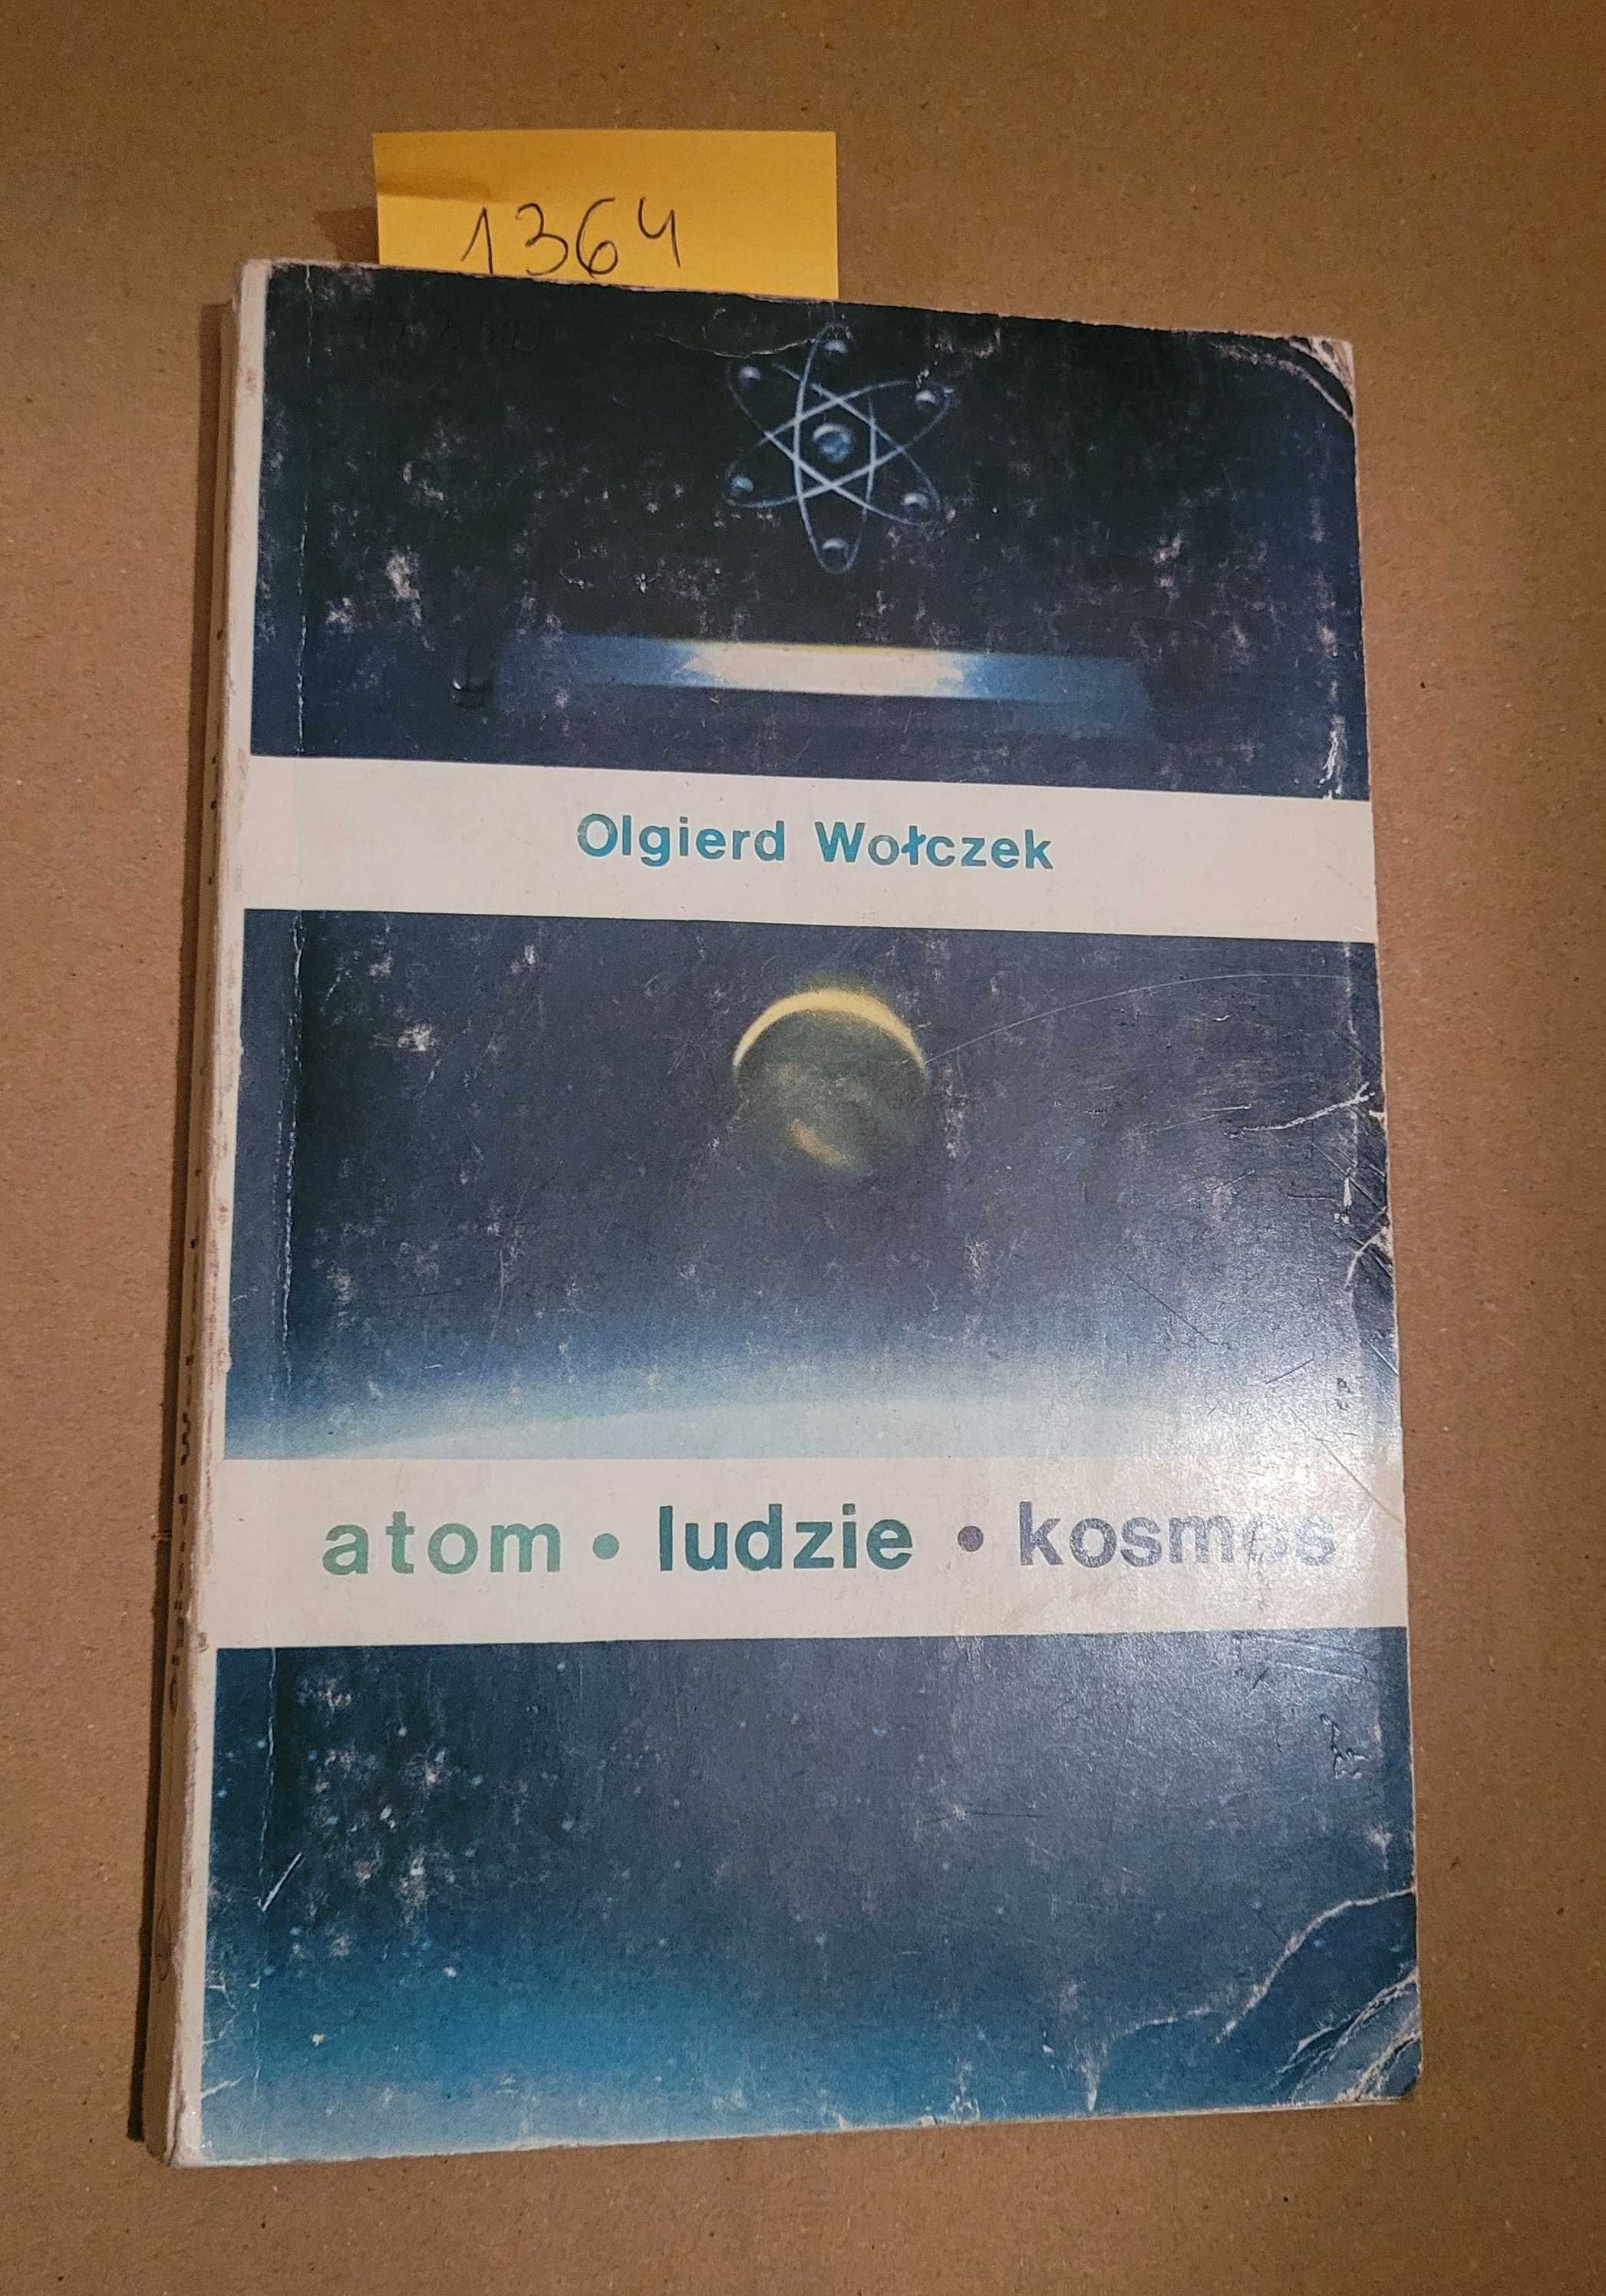 1364. "Atom, ludzie, kosmos" Olgierd Wołczek